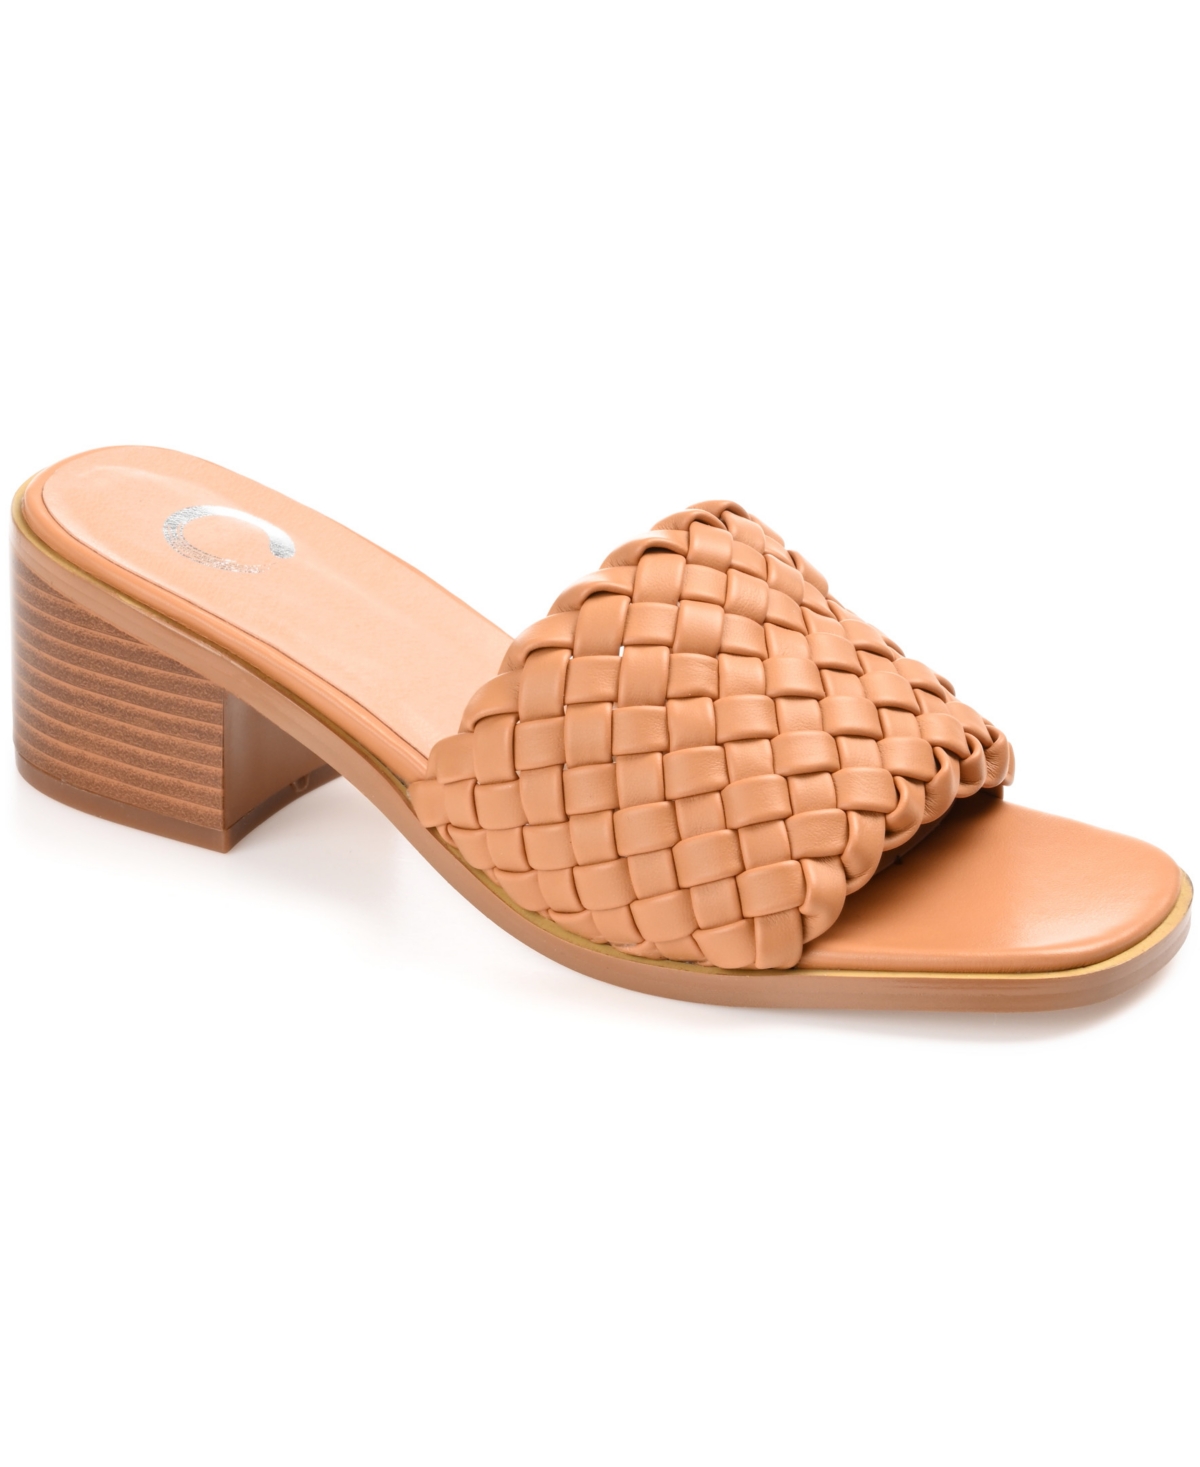 Women's Fylicia Woven Block Heel Slide Sandals - Tan